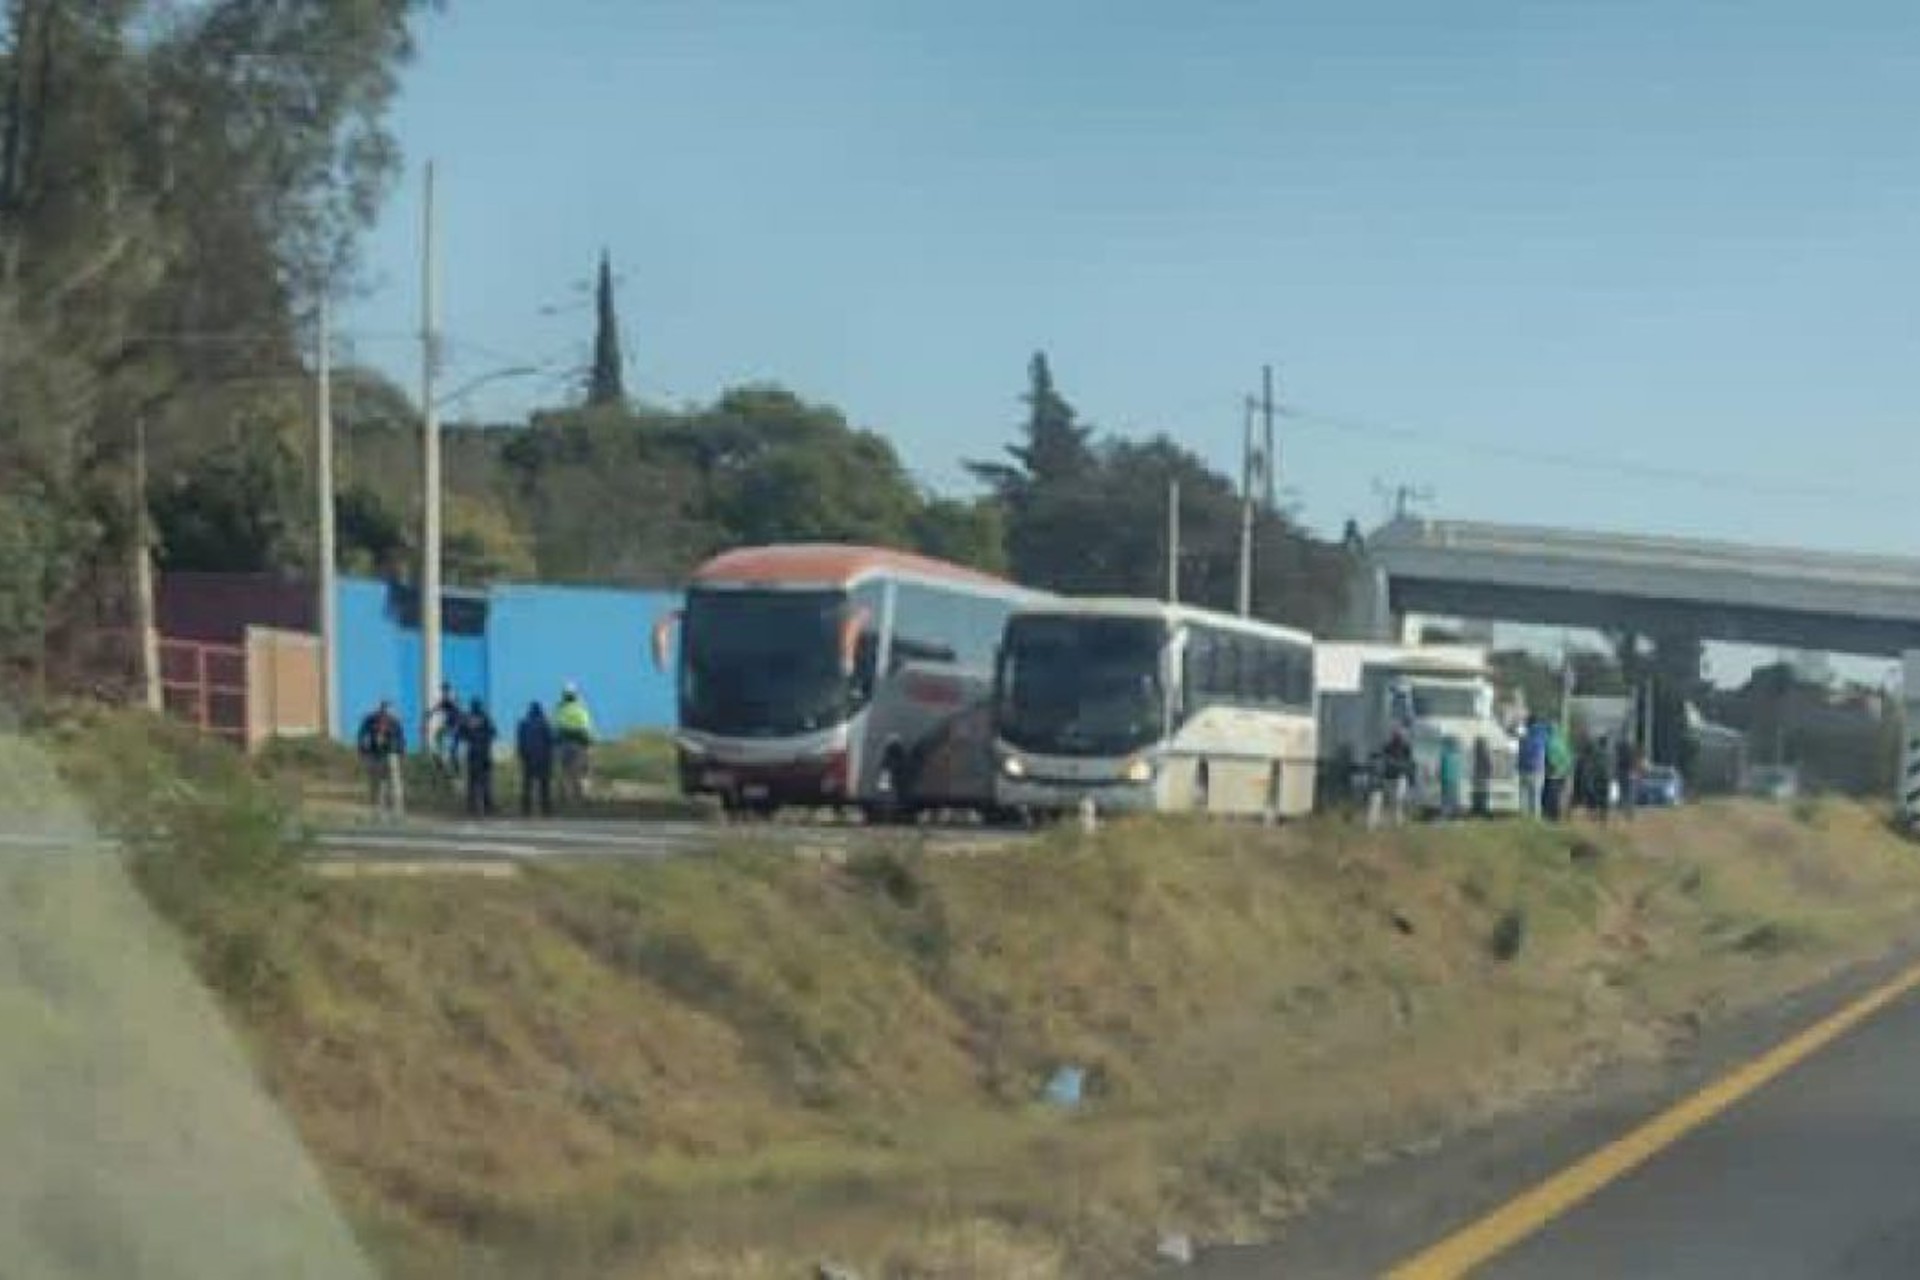 Toman normalistas autobuses en Michoacán